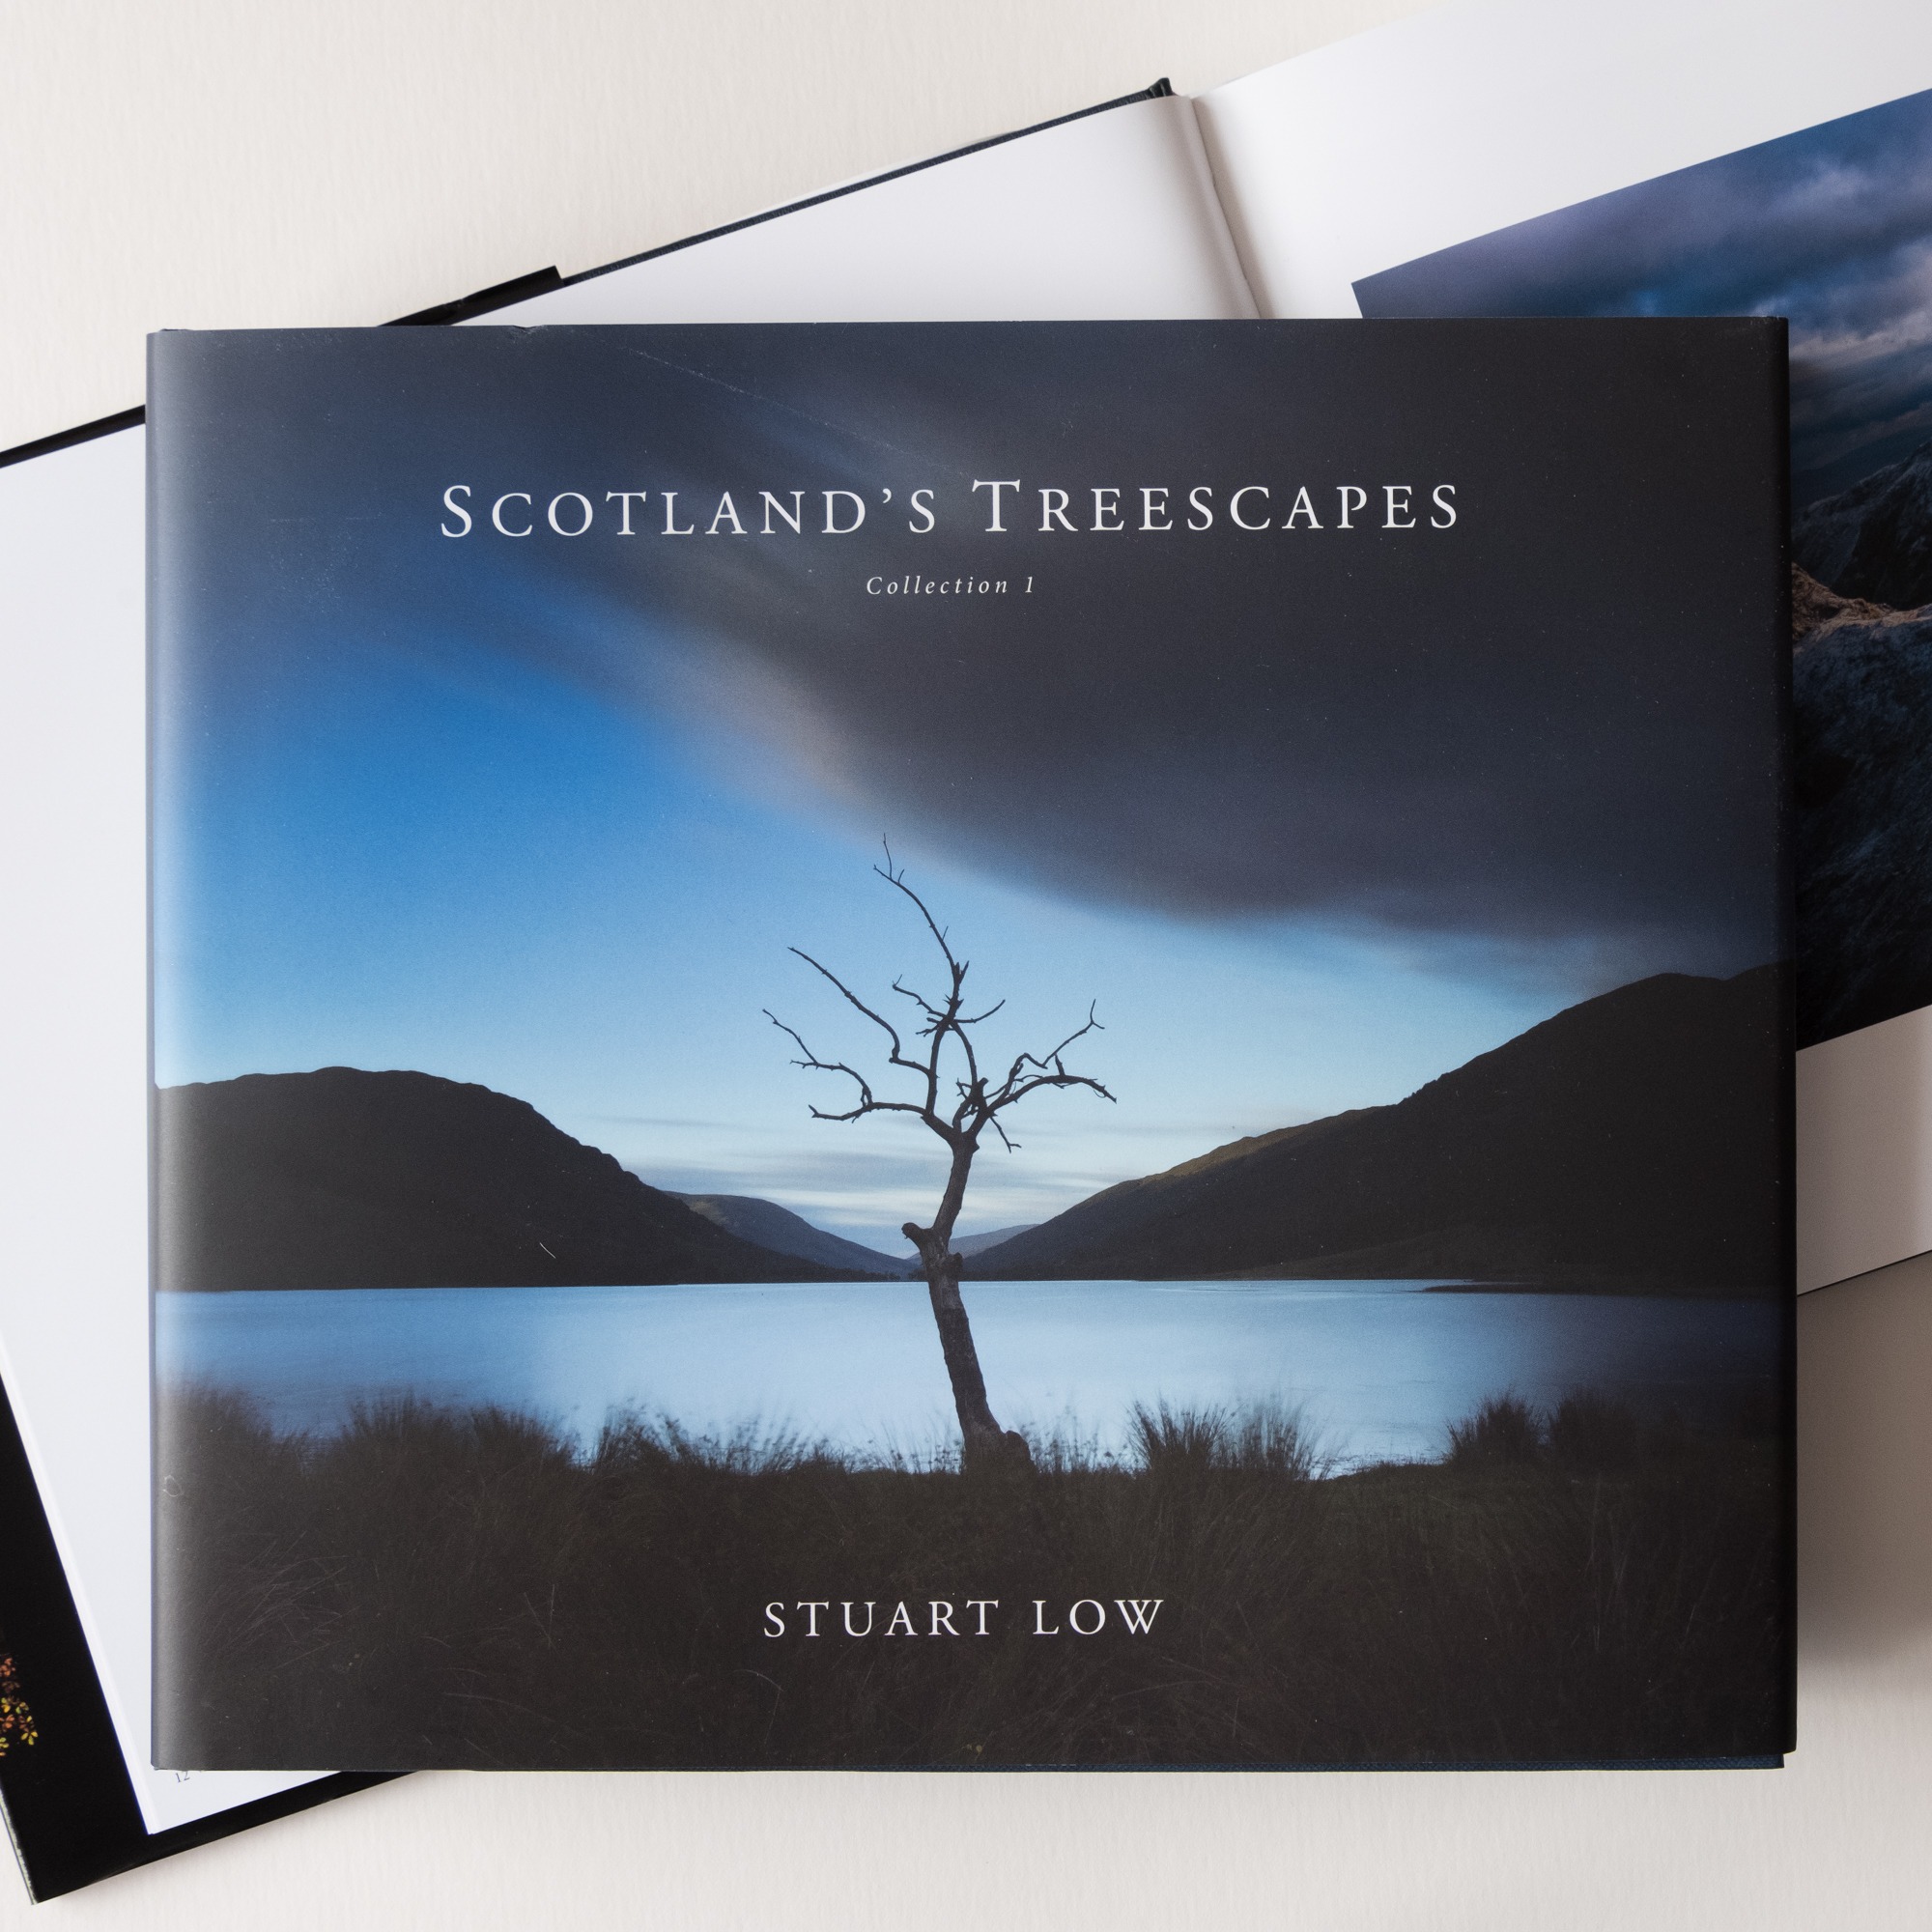 Scotland's Treescapes